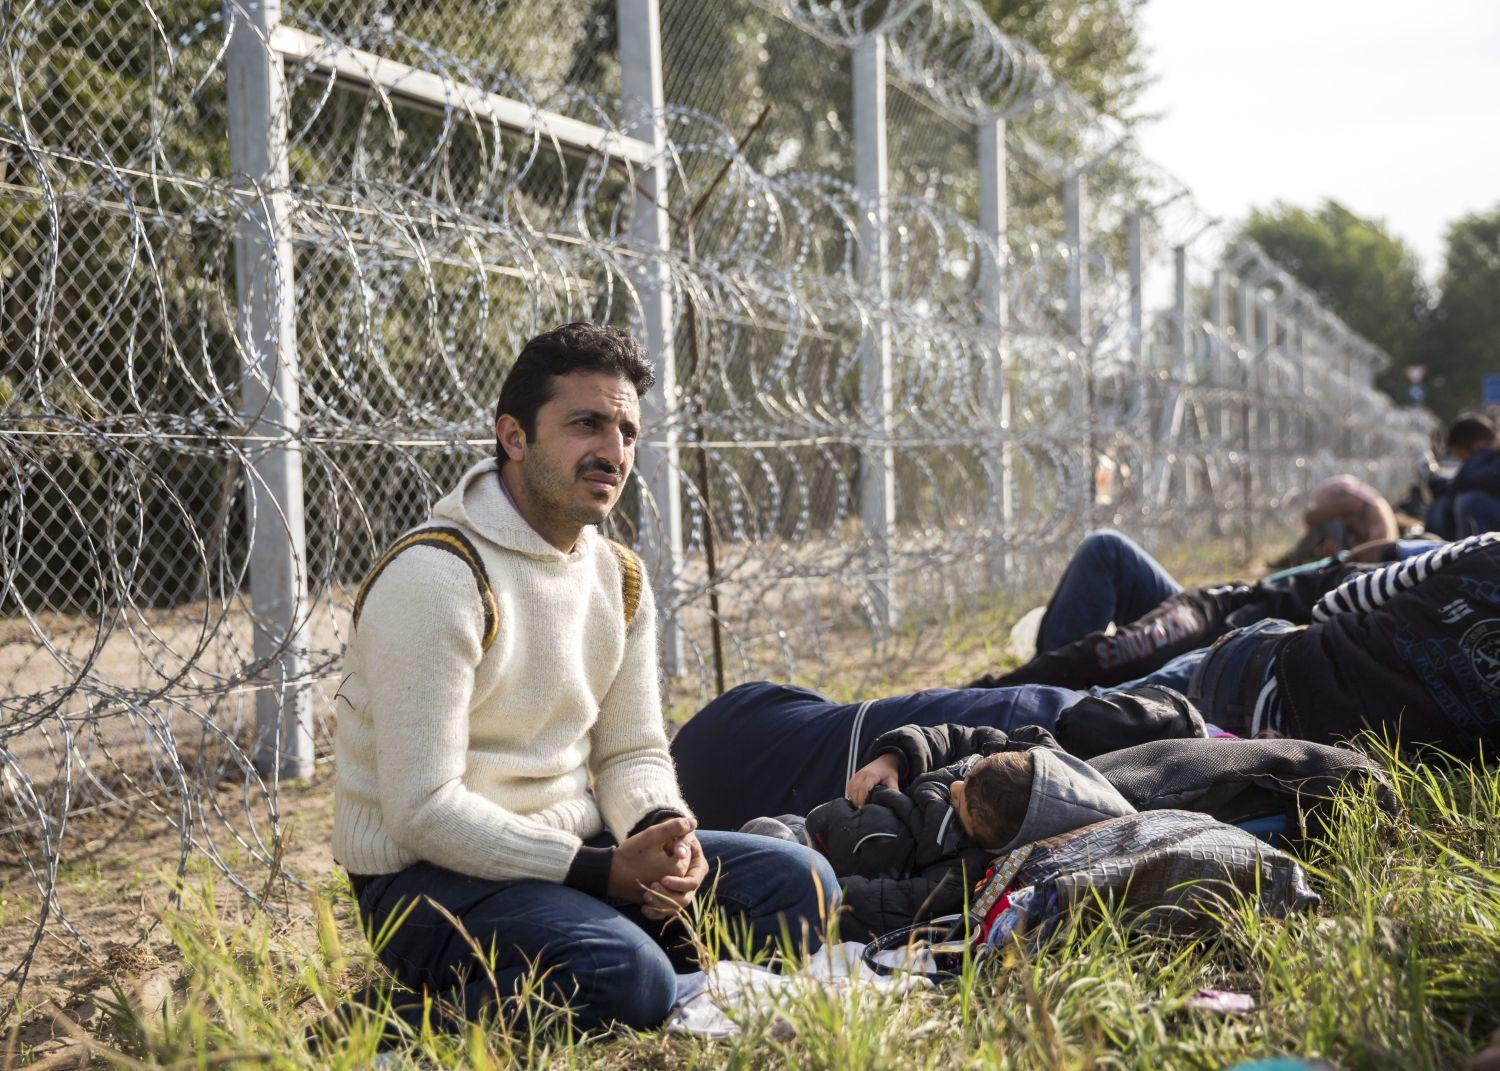 Menekültek a röszkei áteresztési pontnál, a szerbiai oldalon: patthelyzet